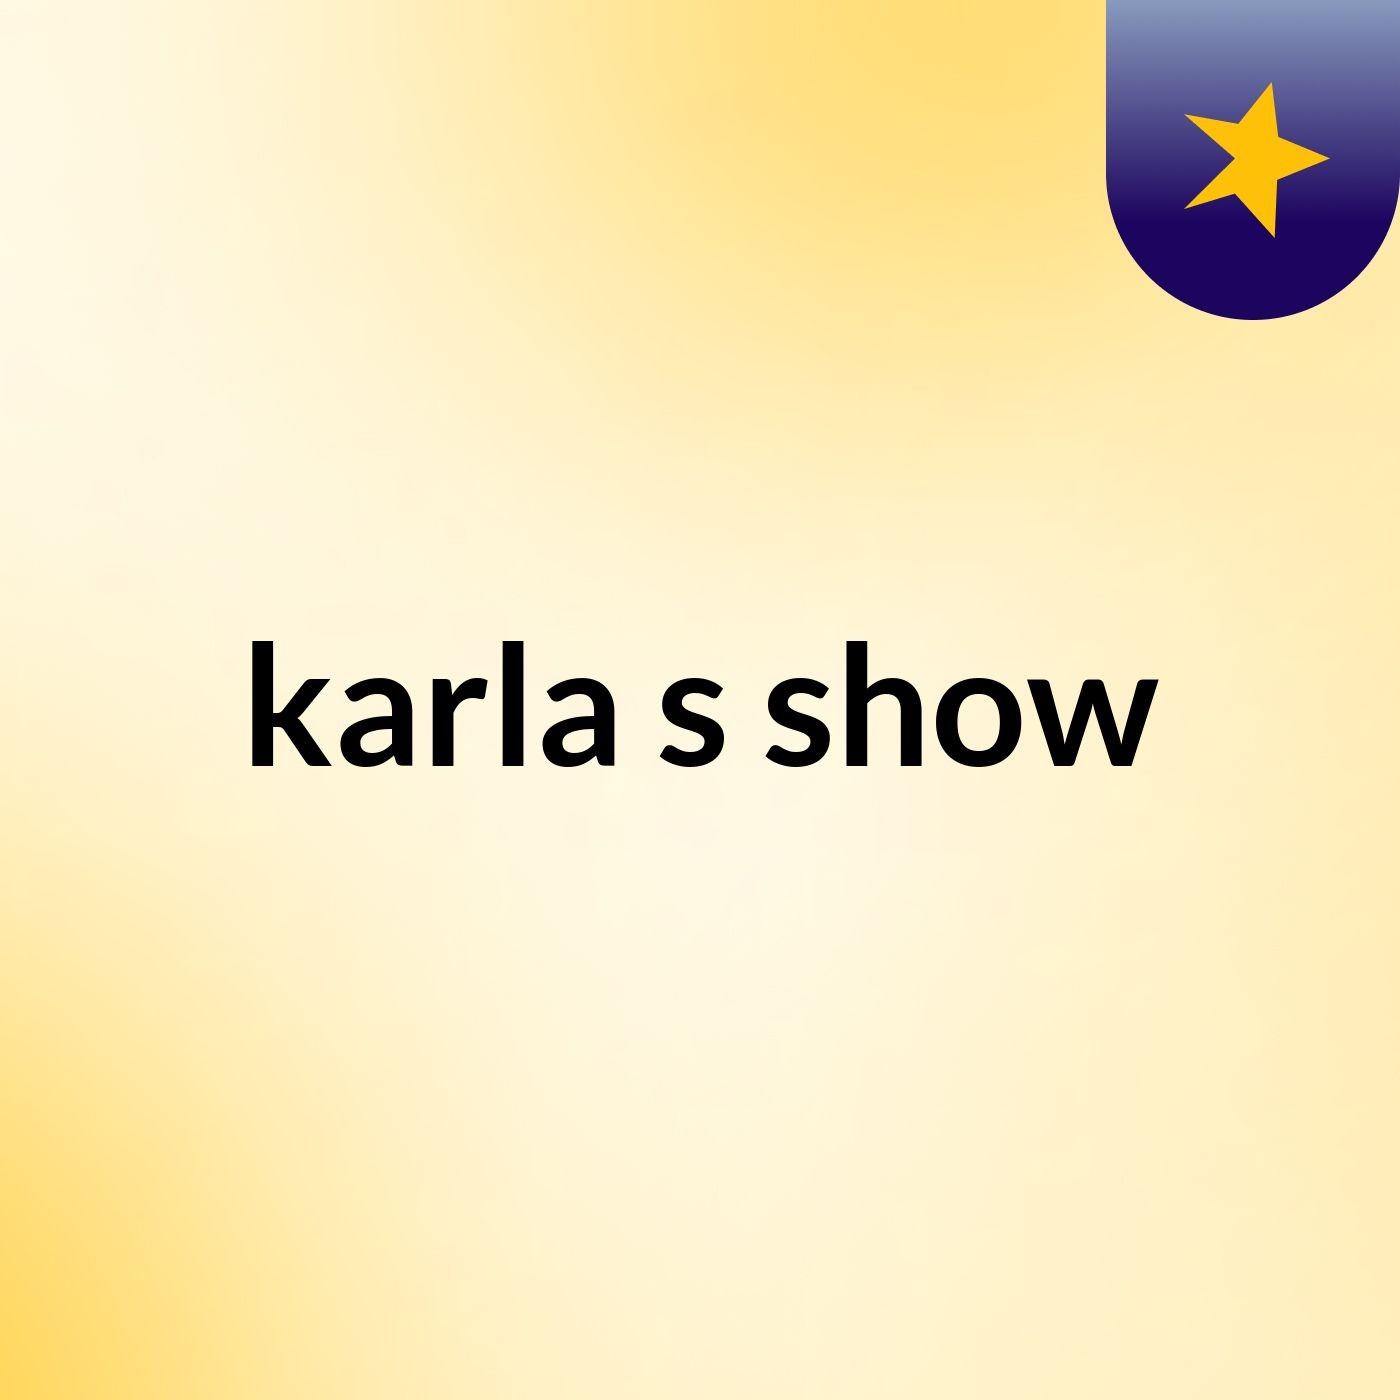 karla's show